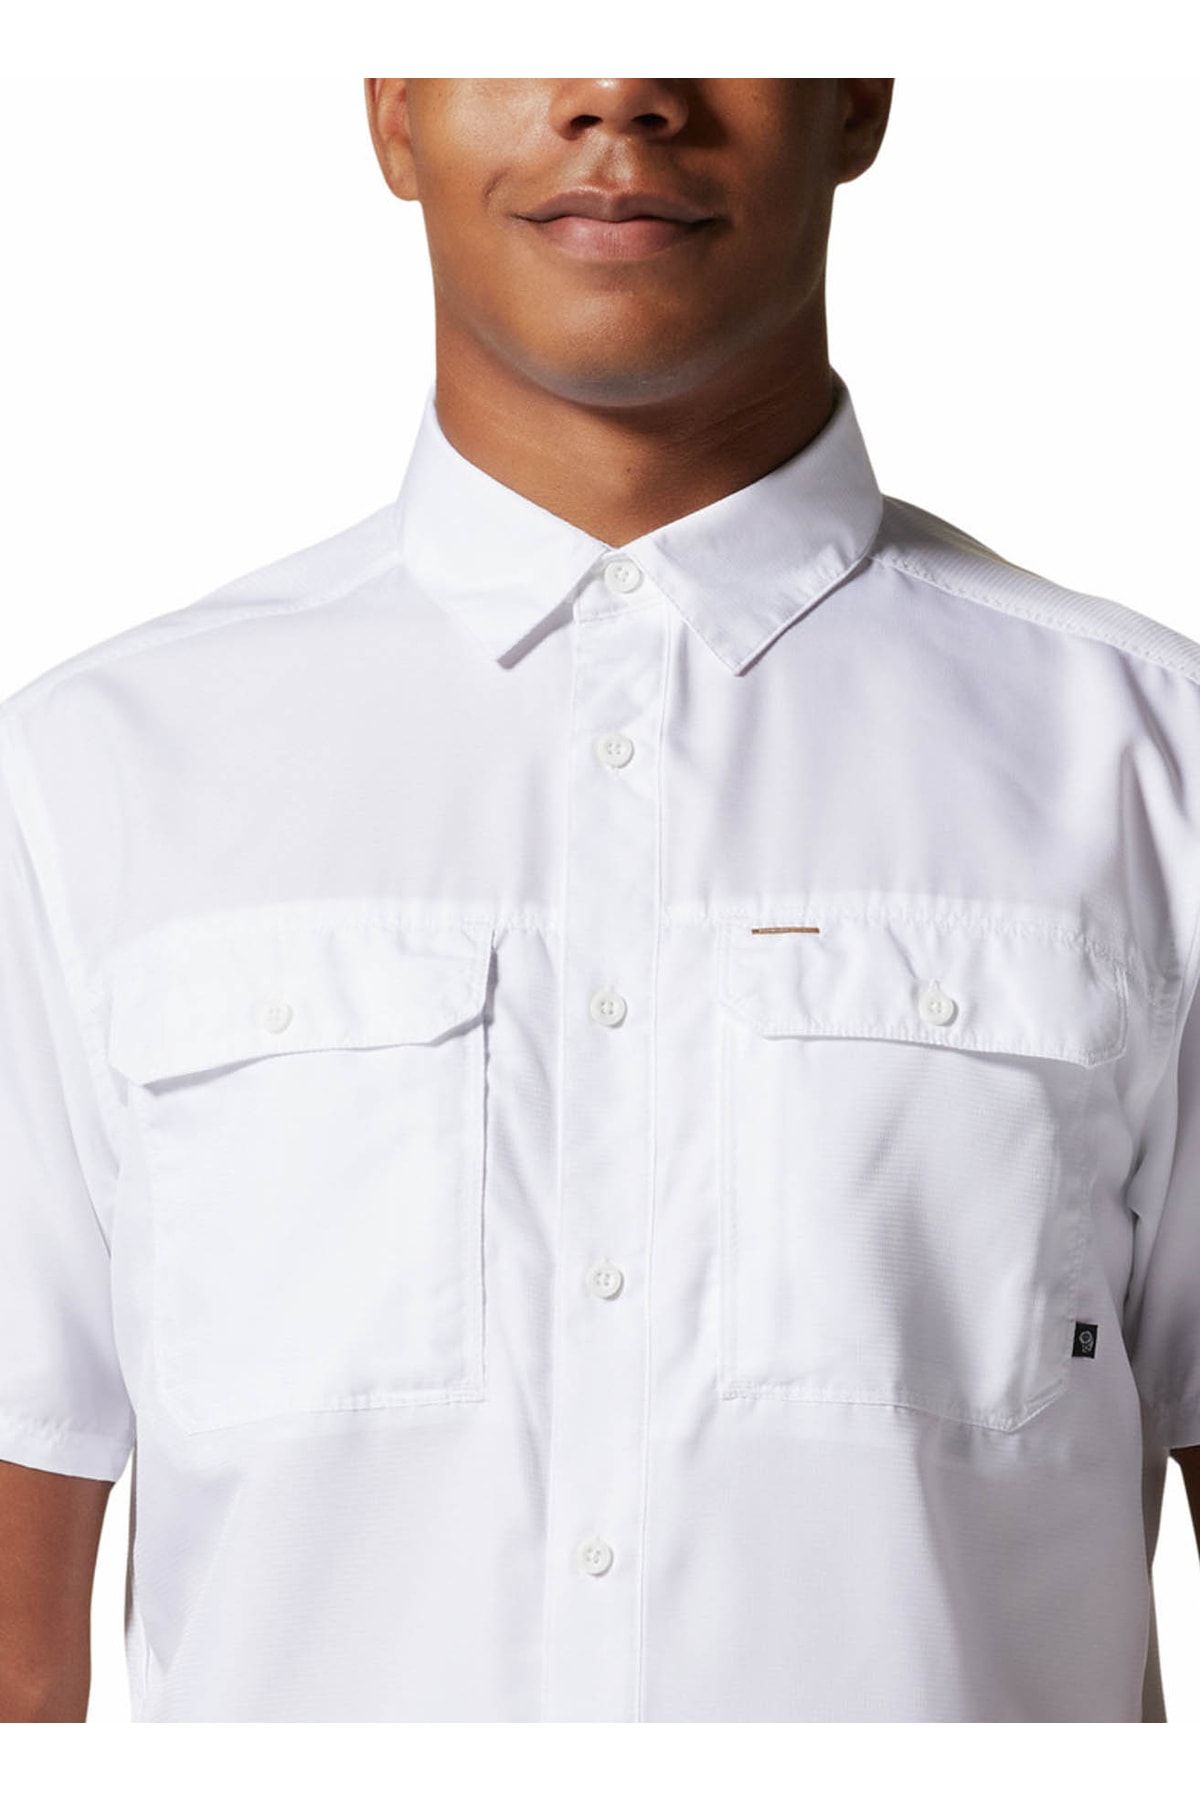 Mountain Hardwear Düz Beyaz Erkek Gömlek 1648771100 Om7044